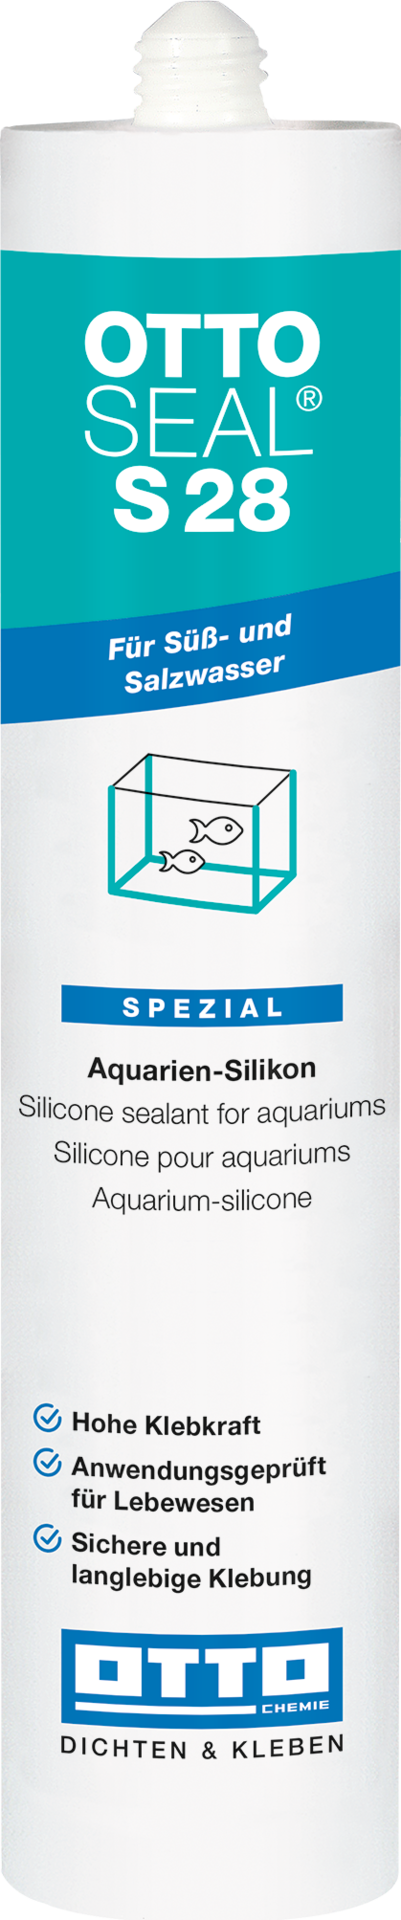 OTTOSEAL S28 Das Aquarien- und Glasstein-Silicon